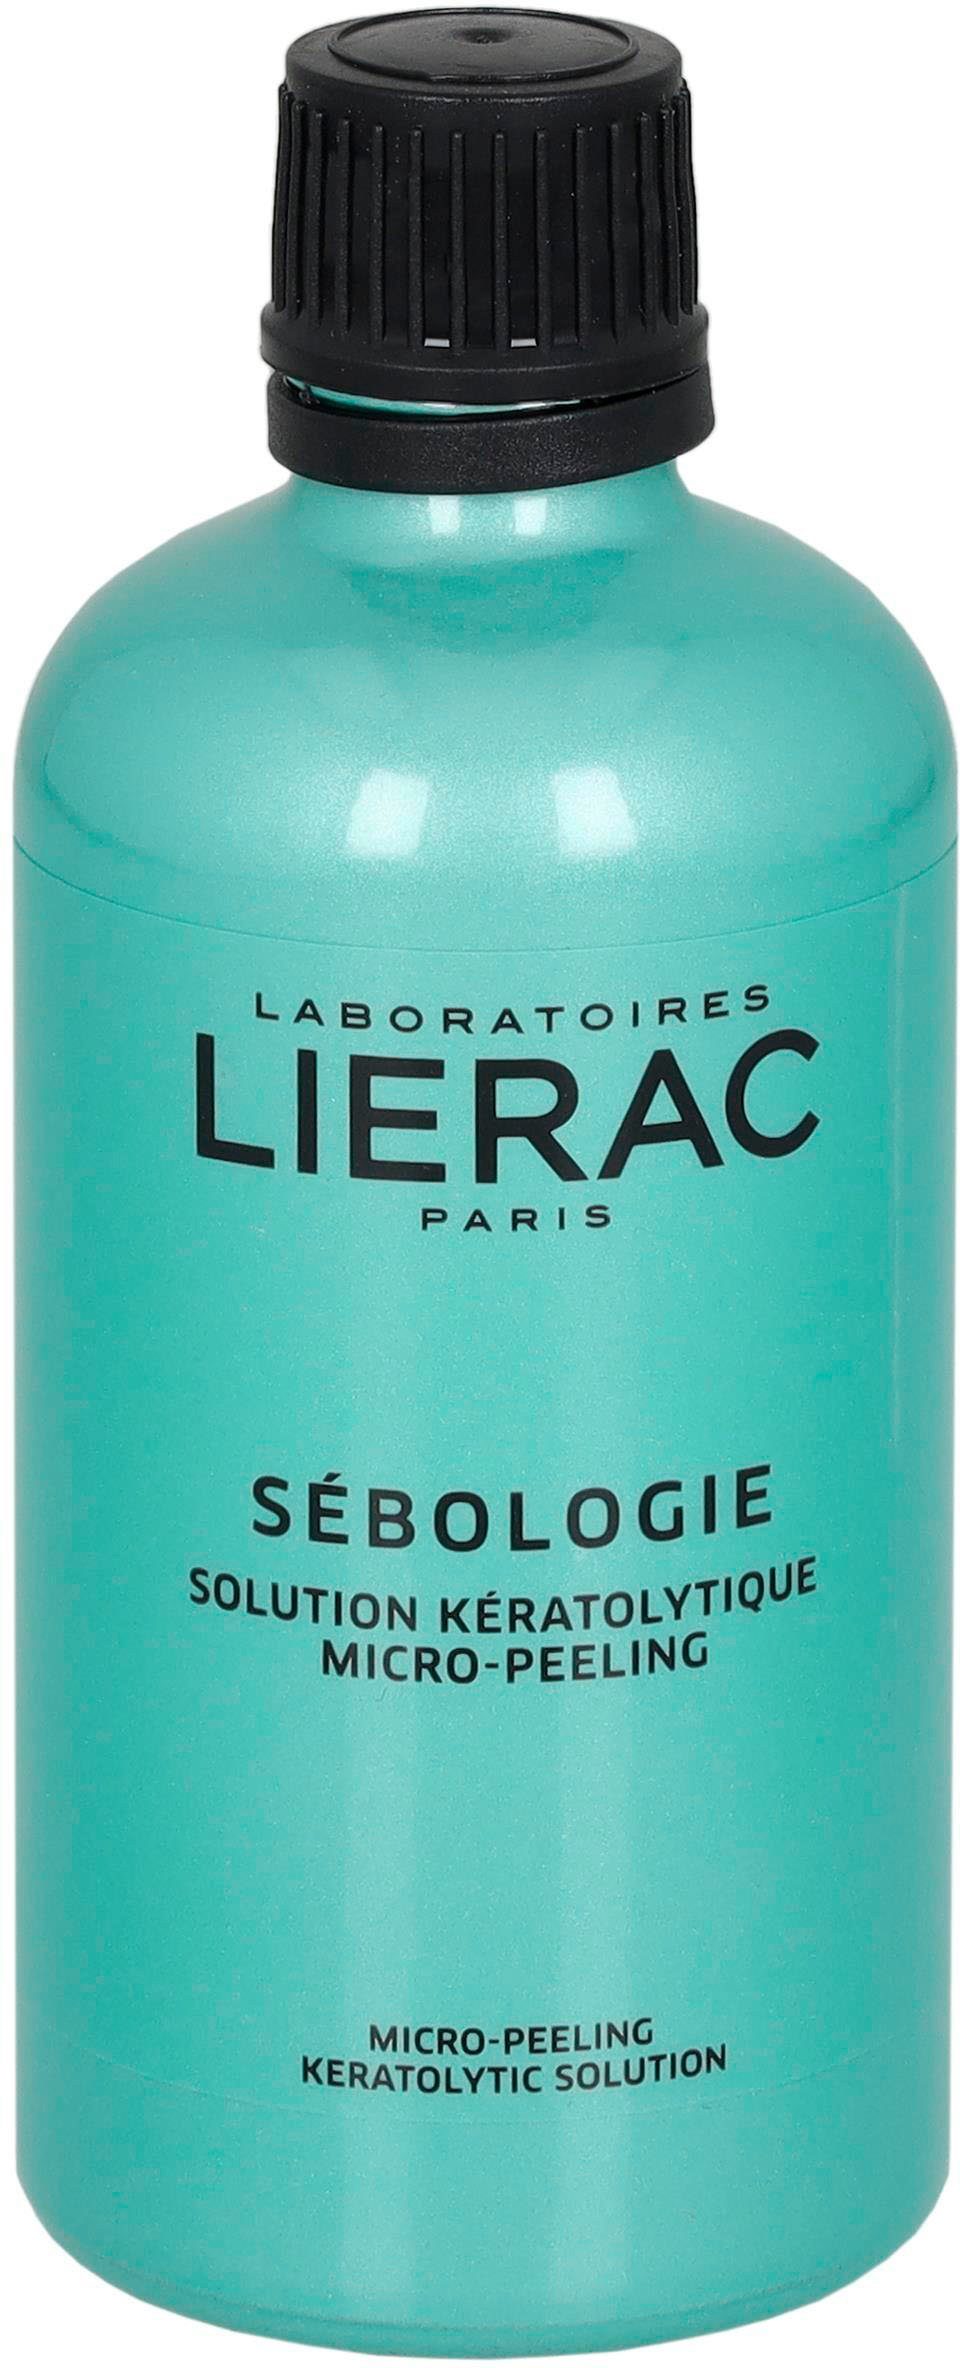 LIERAC Gesichts-Reinigungsfluid Sebologie Solution Keratolytique Micro-Peeling | Reinigungsmilch